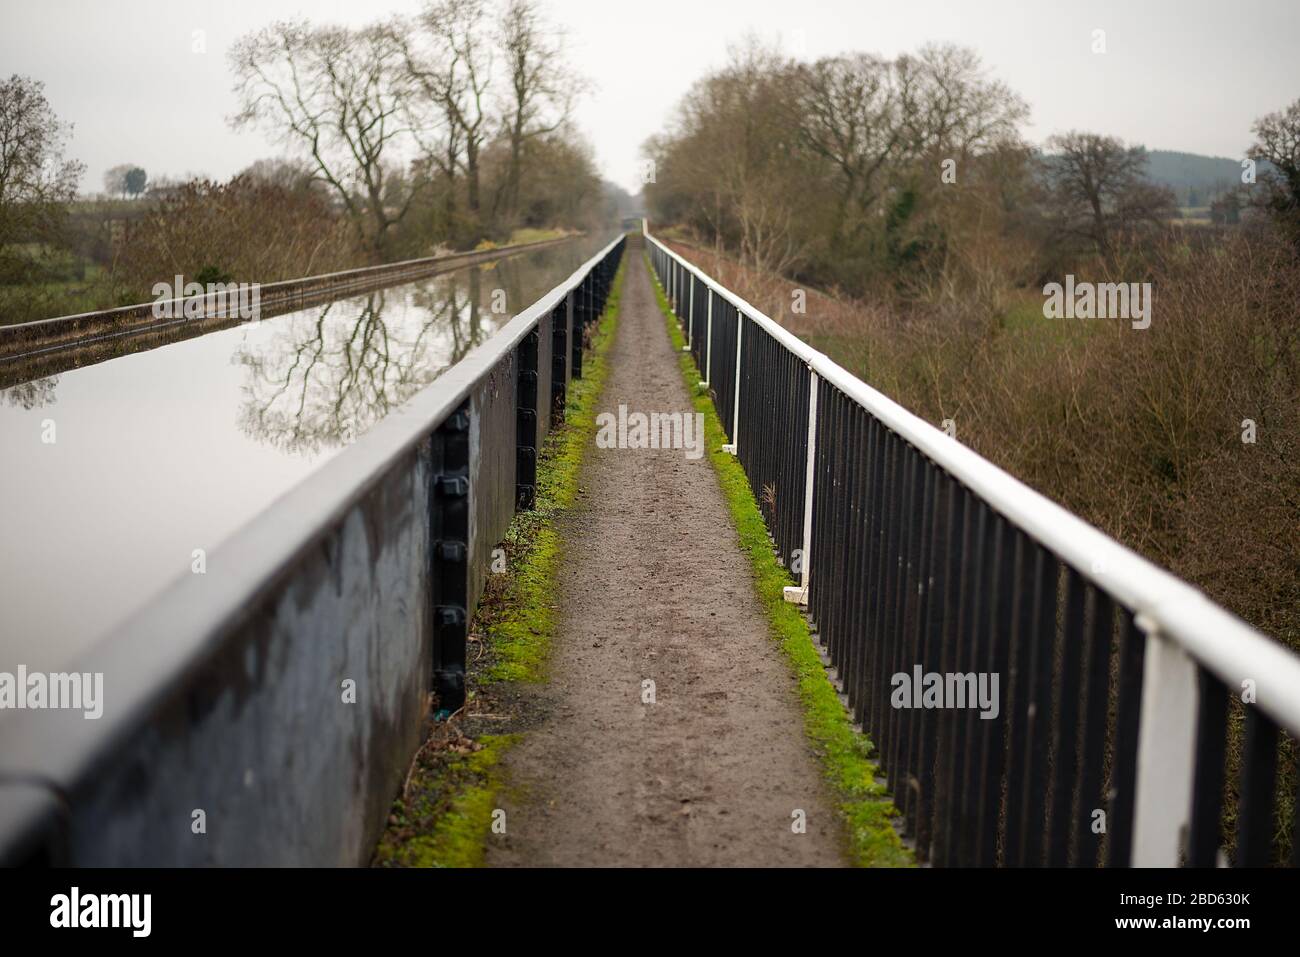 El camino de remolque / sendero a lo largo del acueducto Edstone, el acueducto más largo de Inglaterra en el canal Stratford upon Avon. Foto de stock